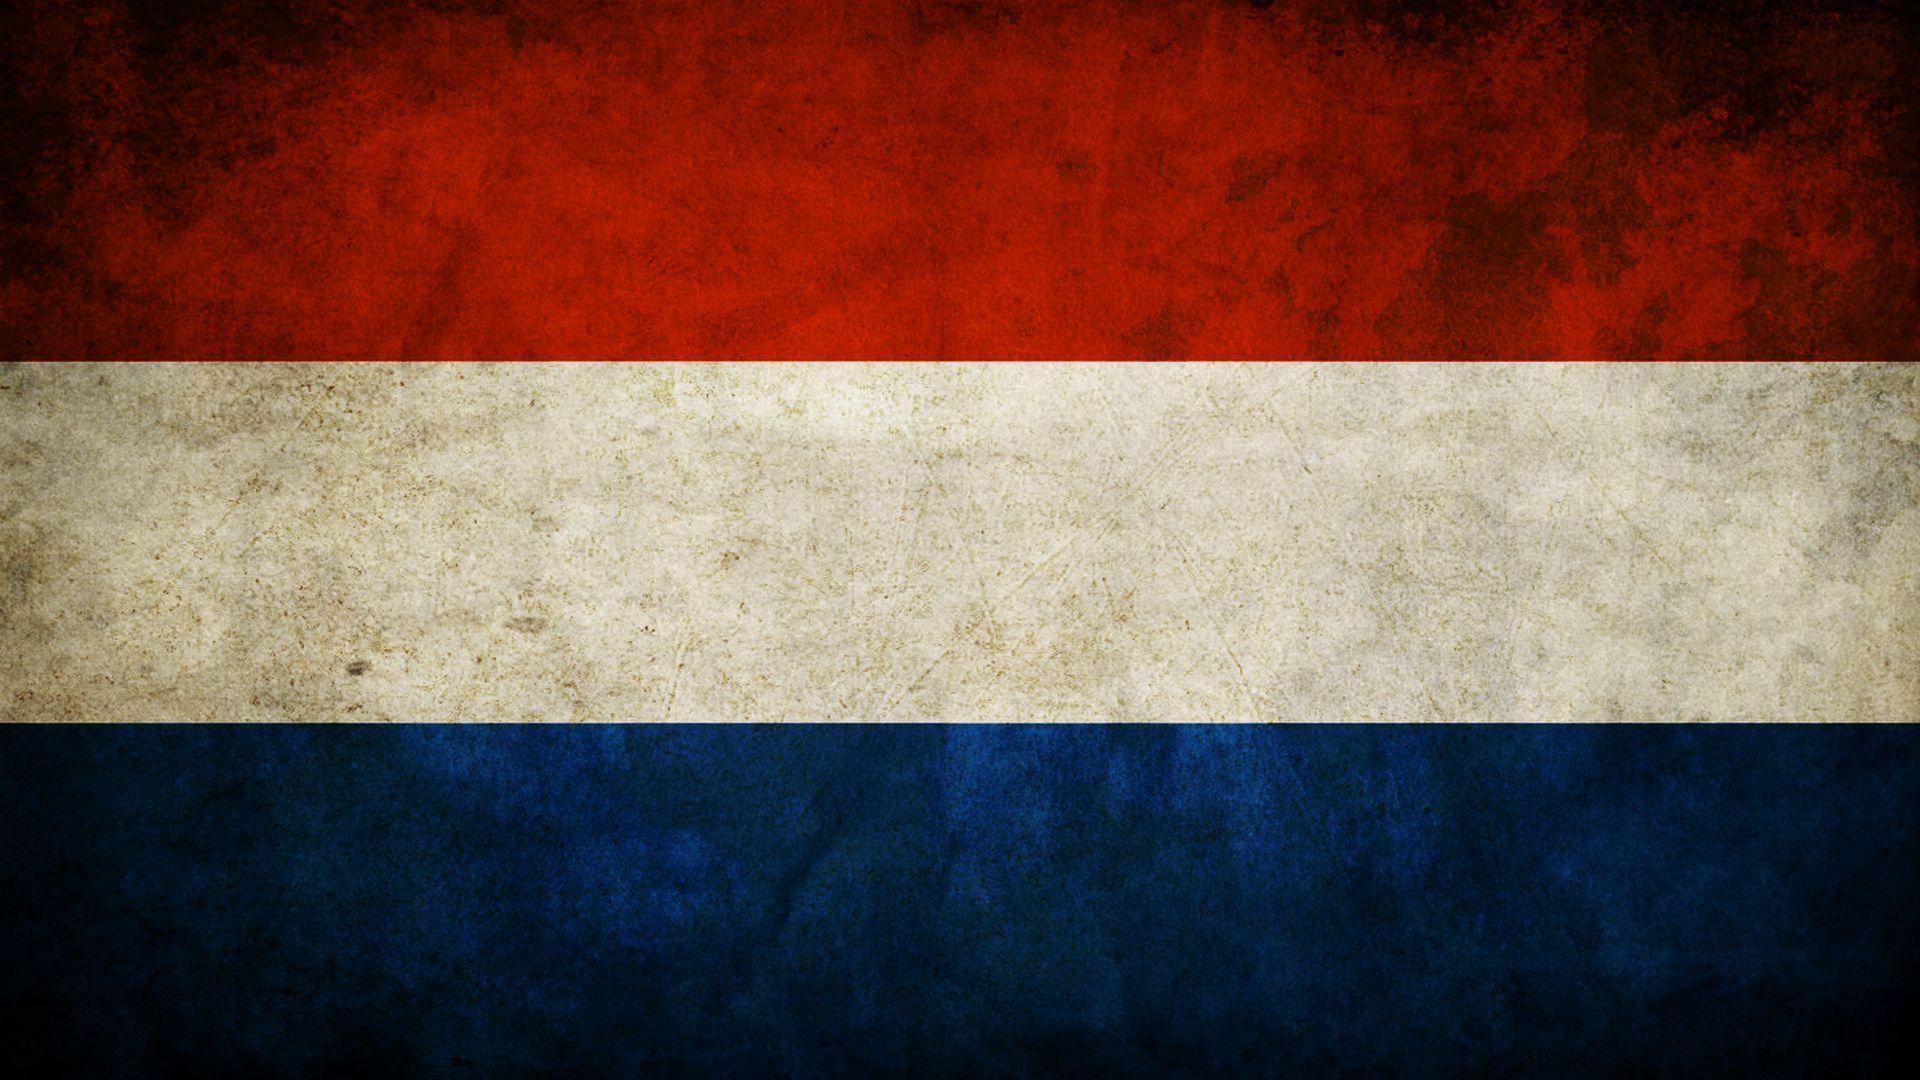 Dutch flag with NL underneath